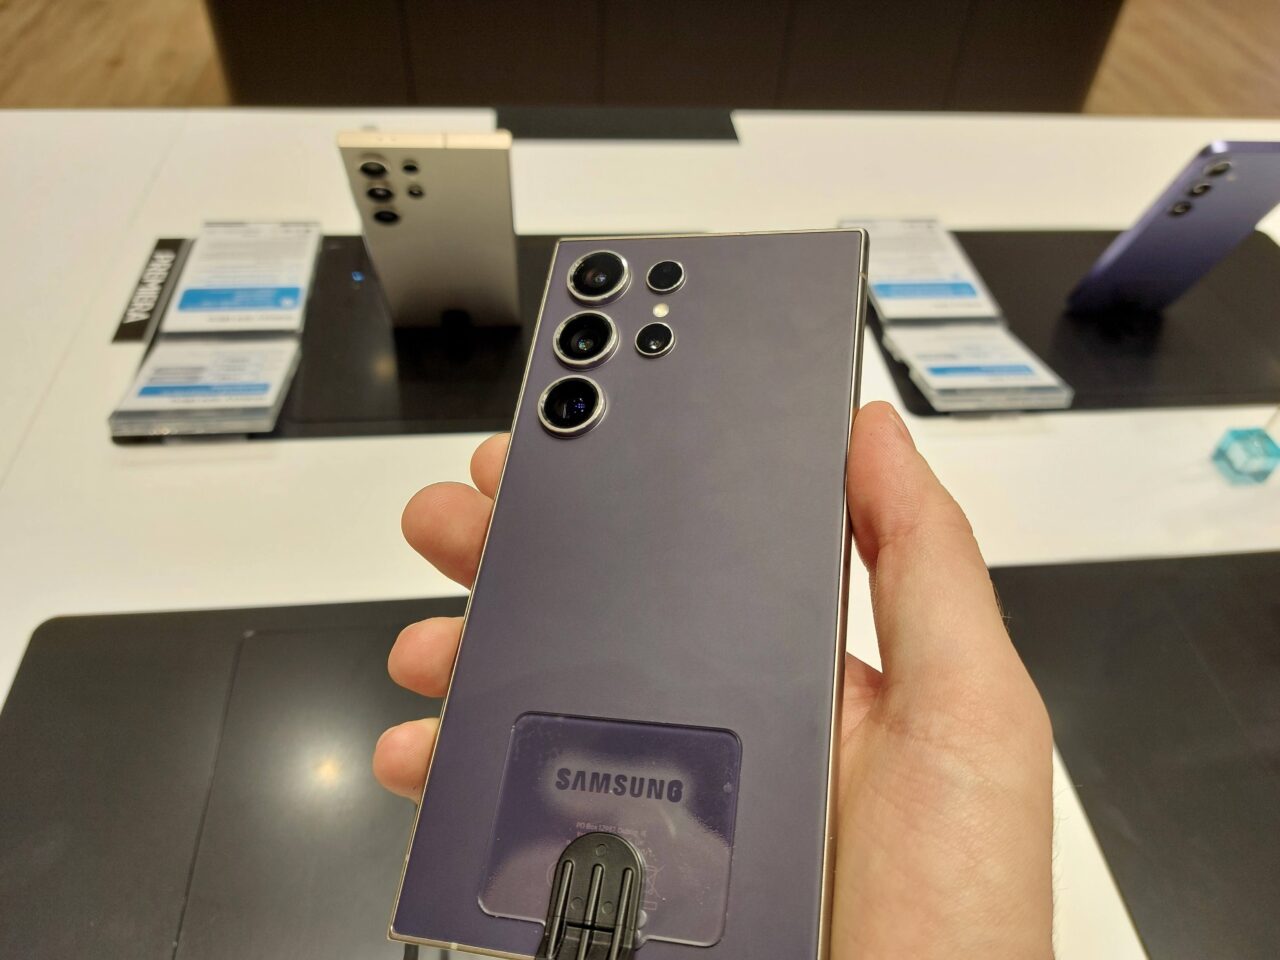 Osoba trzyma tylną część smartfona Samsung z pięcioma aparatami w sklepie elektronicznym, z wystawionymi telefonami w tle.